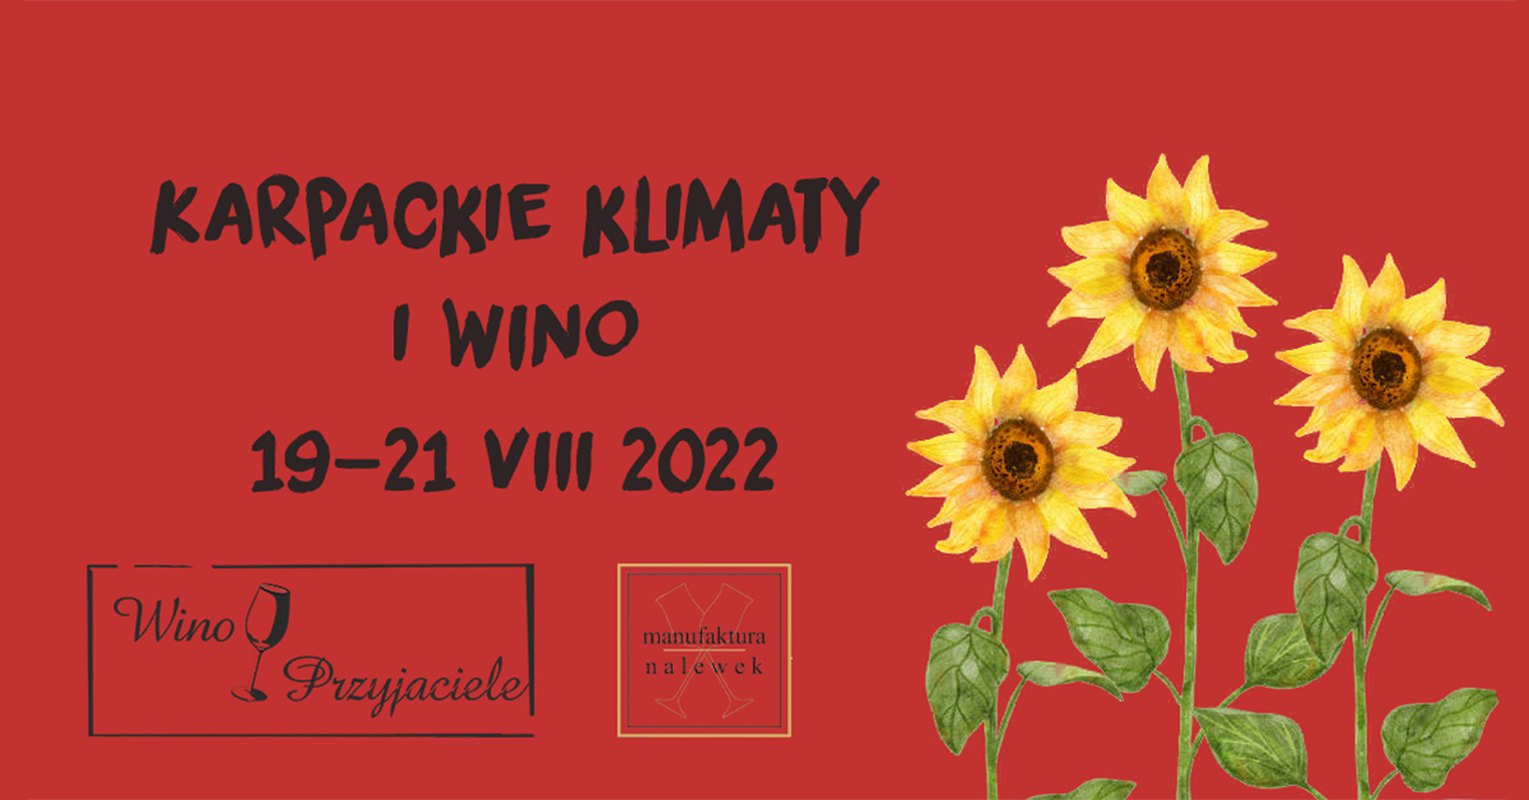 Karpackie Klimaty i wino 2022